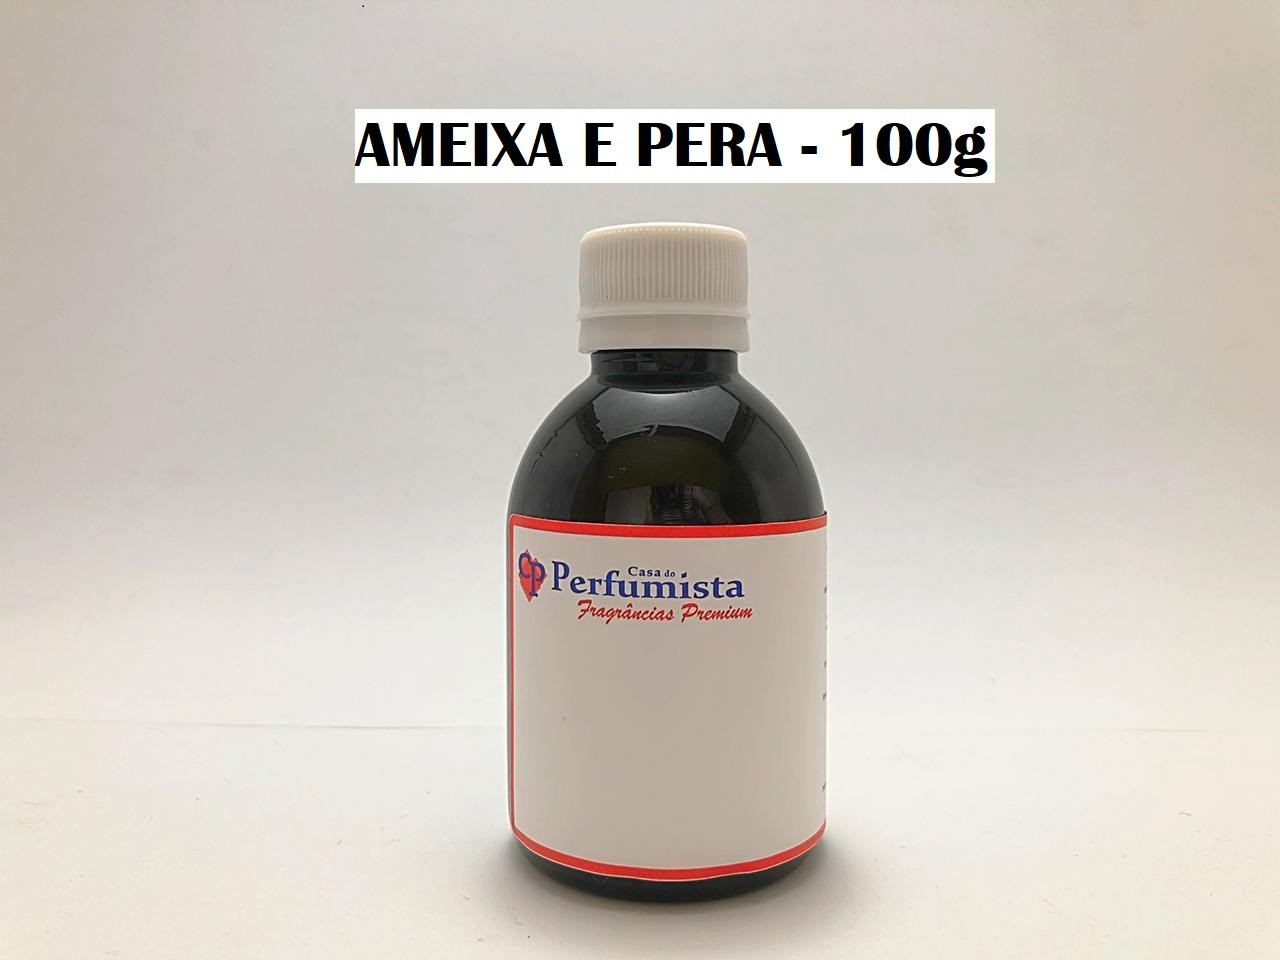 AMEIXA E PERA - 100g